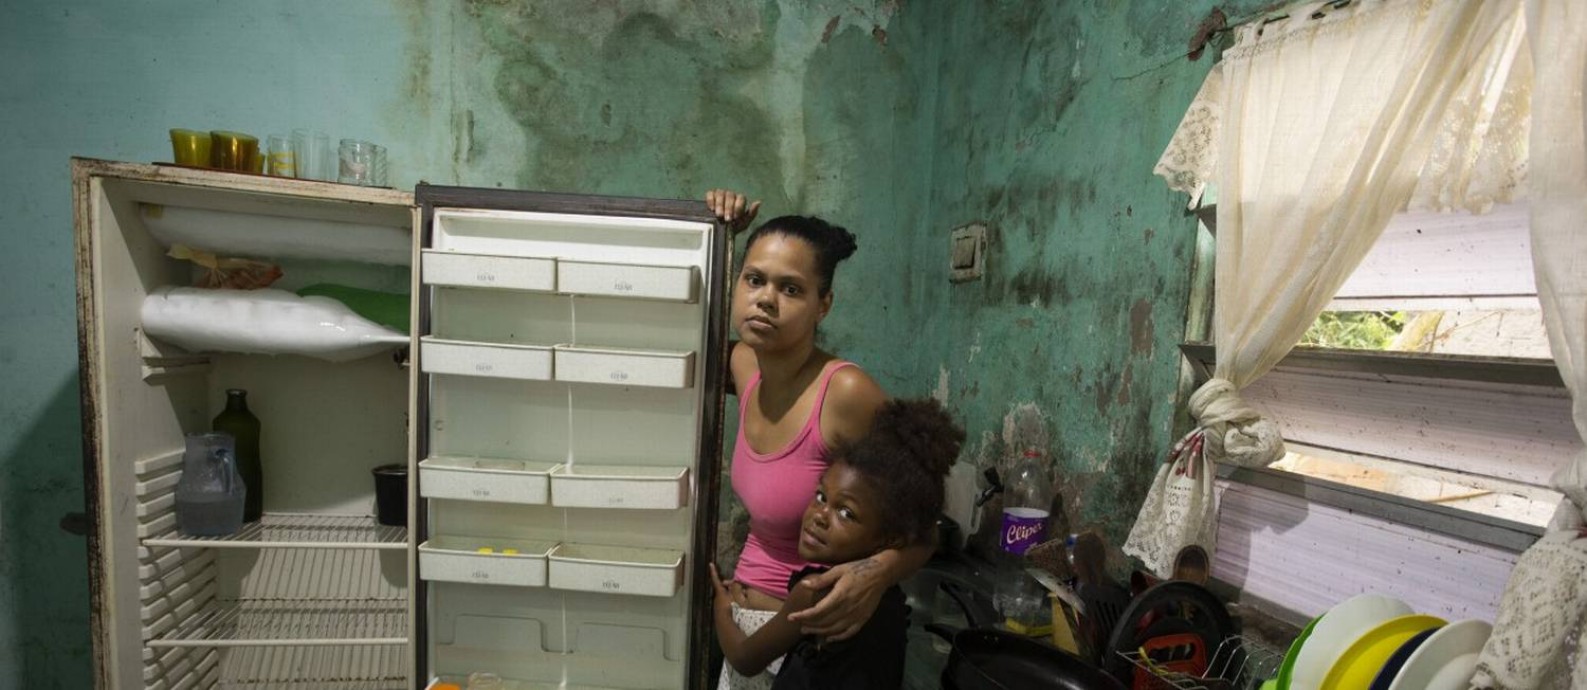 Desigualdade de renda persiste no Brasil, mesmo após programas de transferência de renda. Na foto, família em Nova Iguaçu. Foto: Márcia Foletto / Agência O Globo